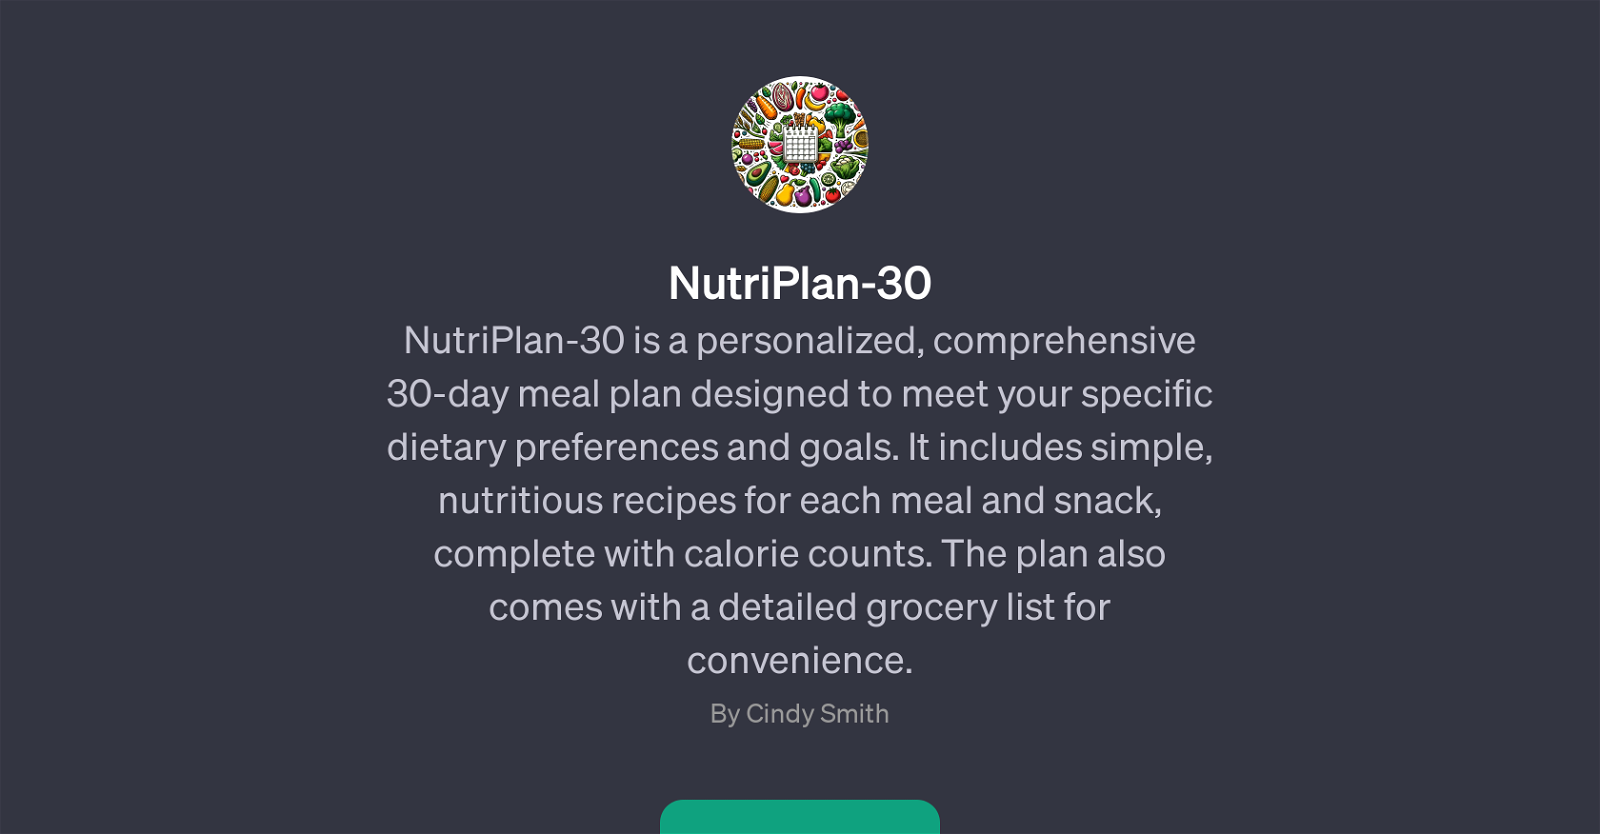 NutriPlan-30 website